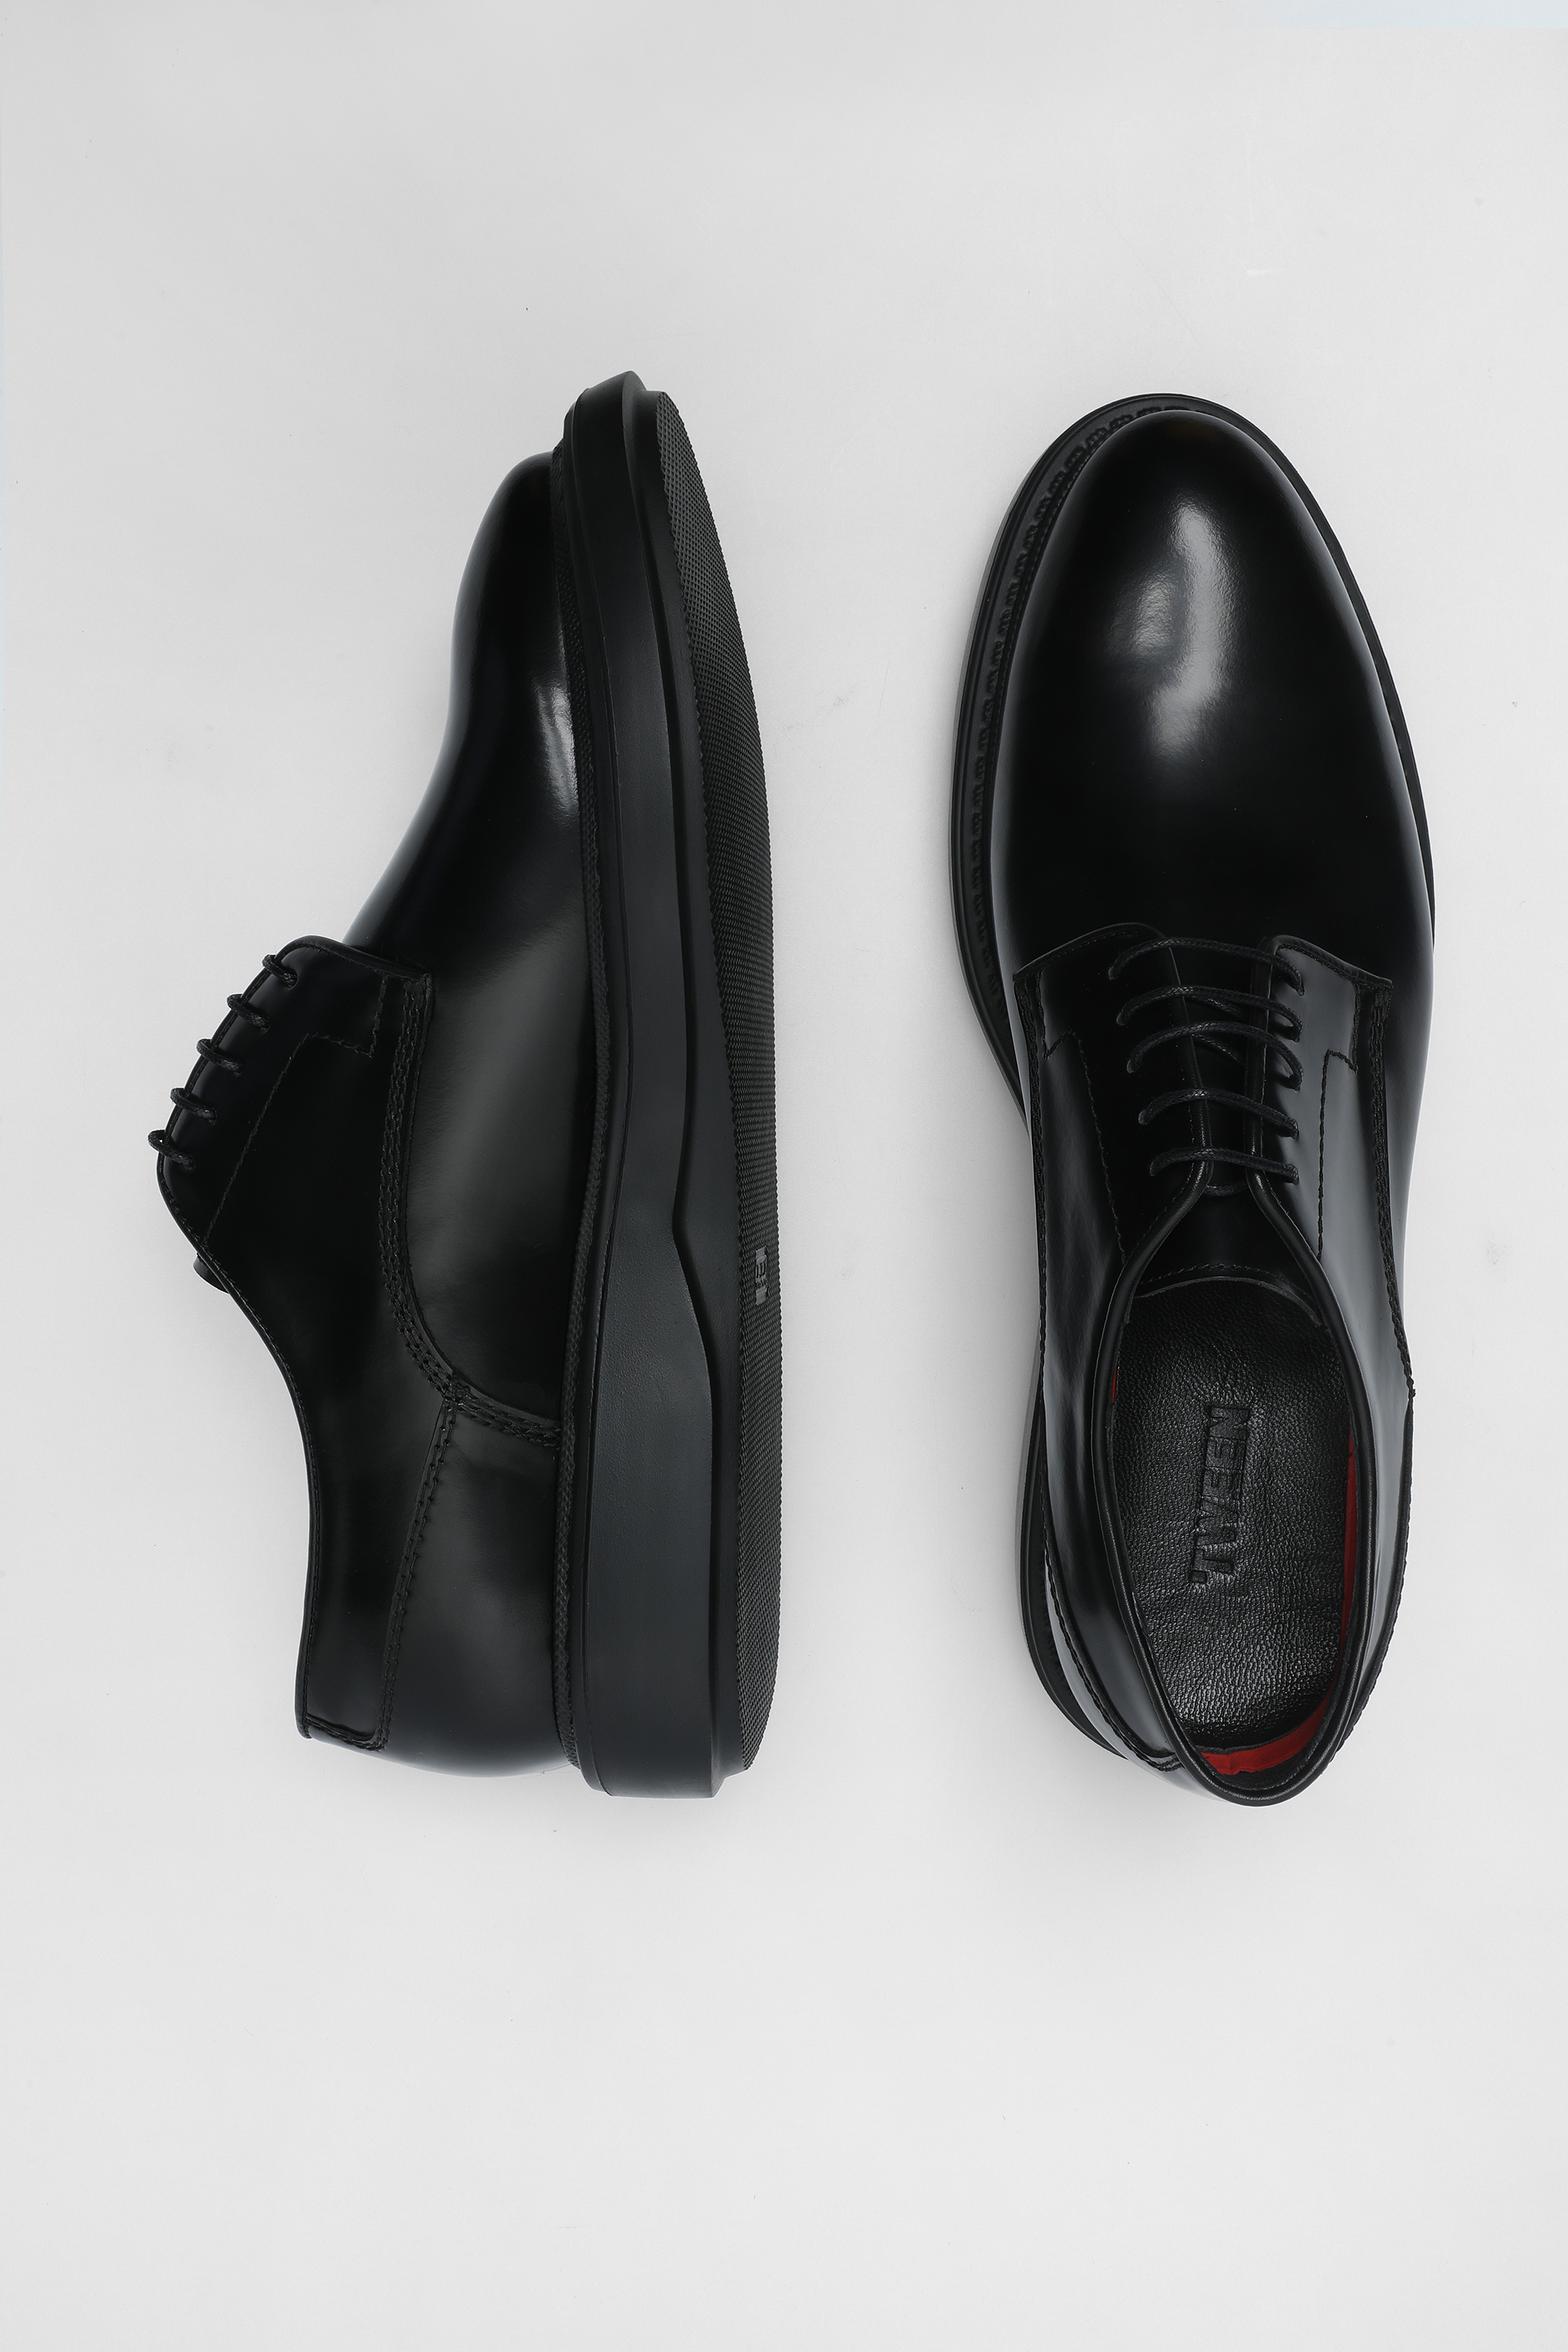 Damat Tween Tween Siyah Ayakkabı. 4